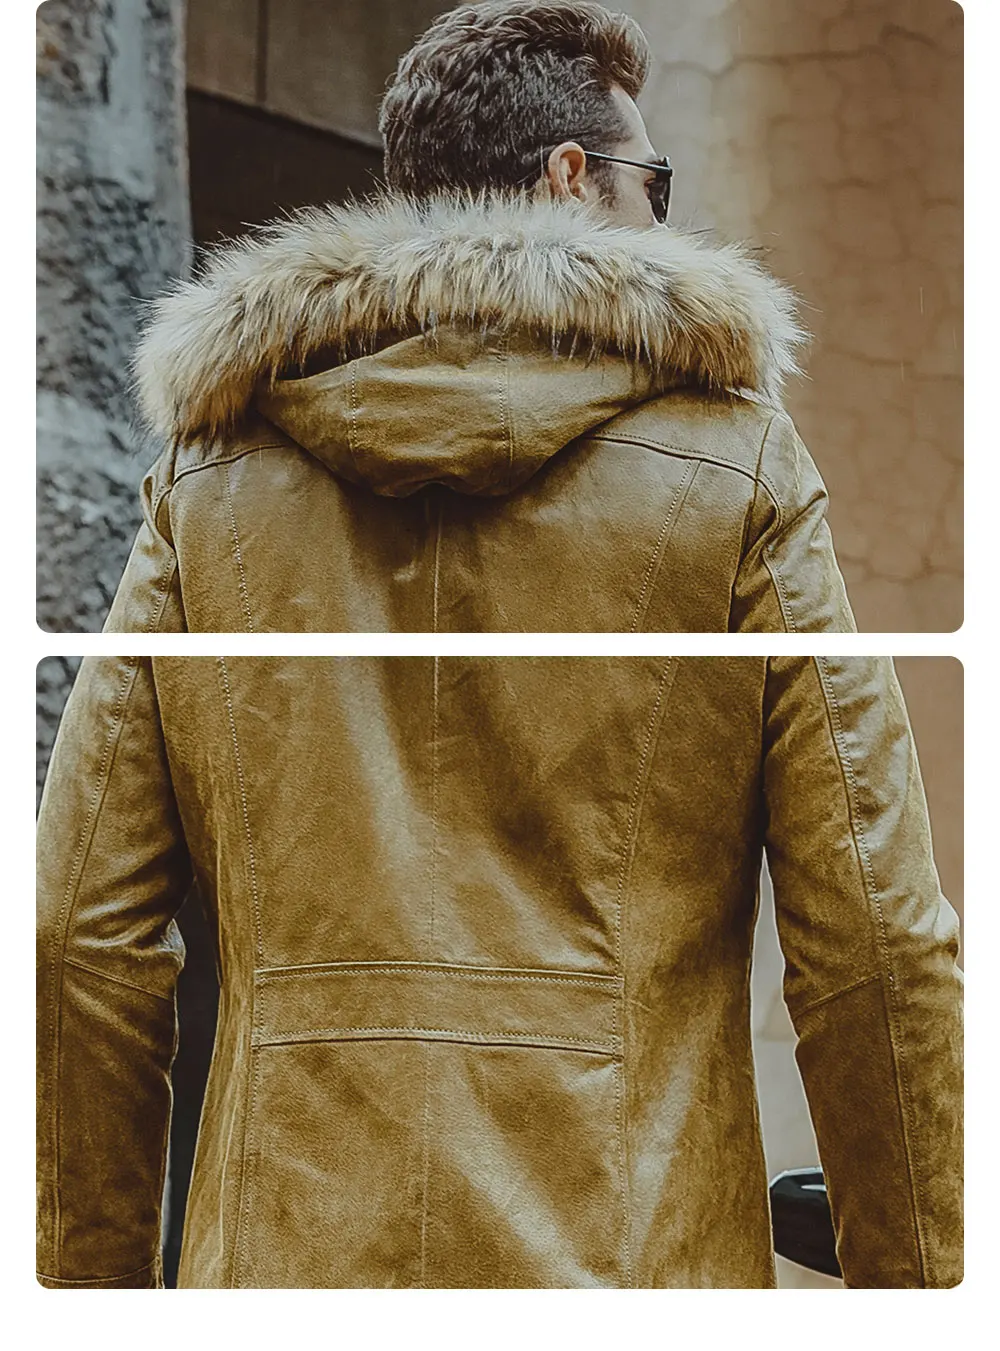 Kожаная куртка мужская с подкладкой из хлопка, куртки из натрупльной кожи с капюшоном, жакеты из свиной шкуры, теплое пальто желтого цвета с меховой шапкой для зимы